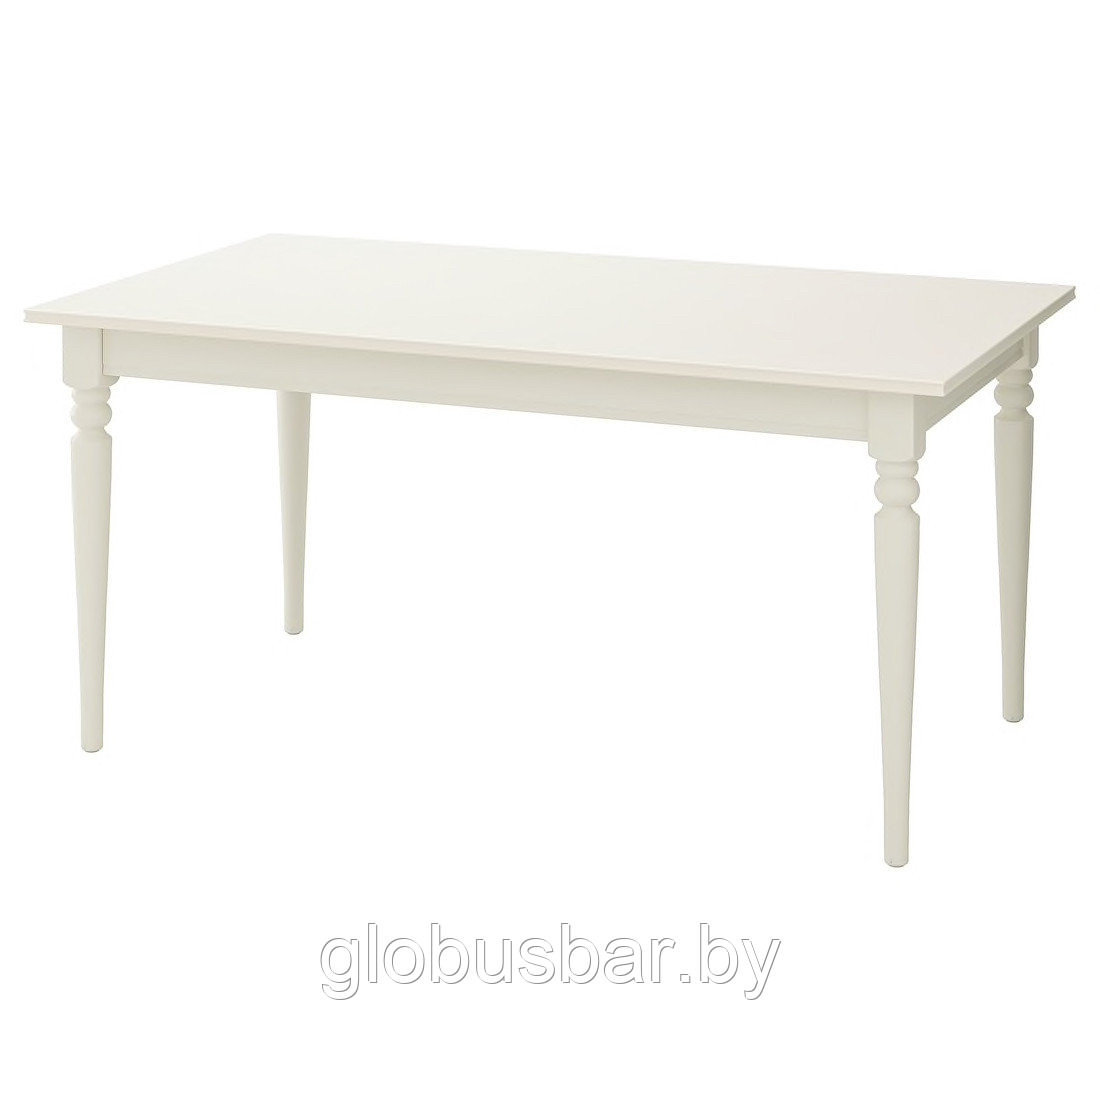 ИНГАТОРП Раздвижной стол, белый, 155/215x87 см